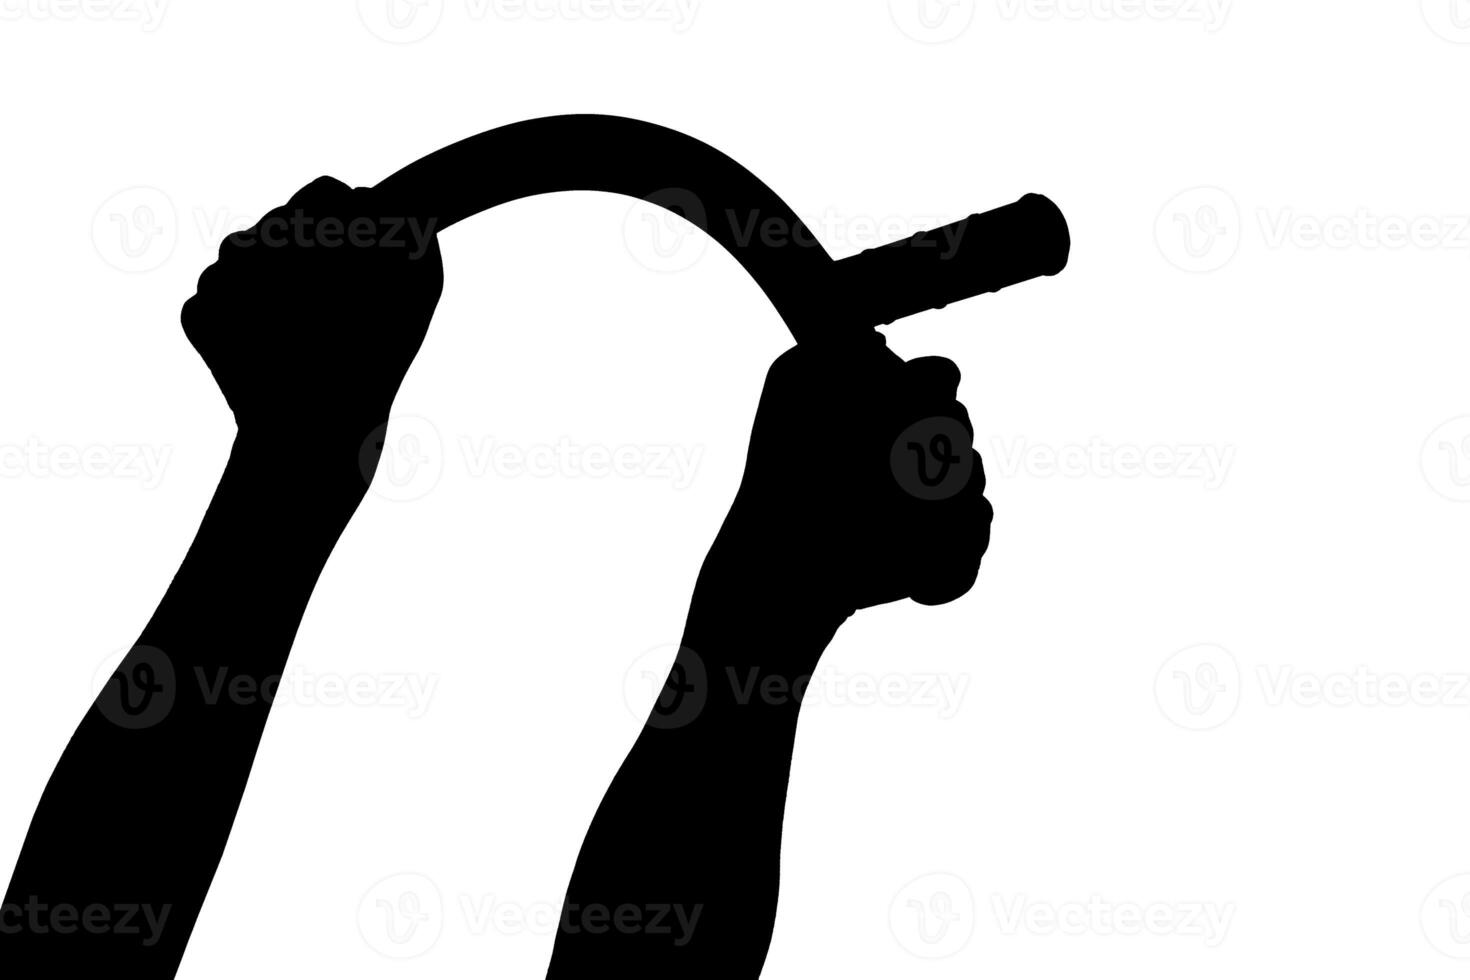 une noir et blanc silhouette de deux bras pliant caoutchouc police bâton isolé sur blanc Contexte photo